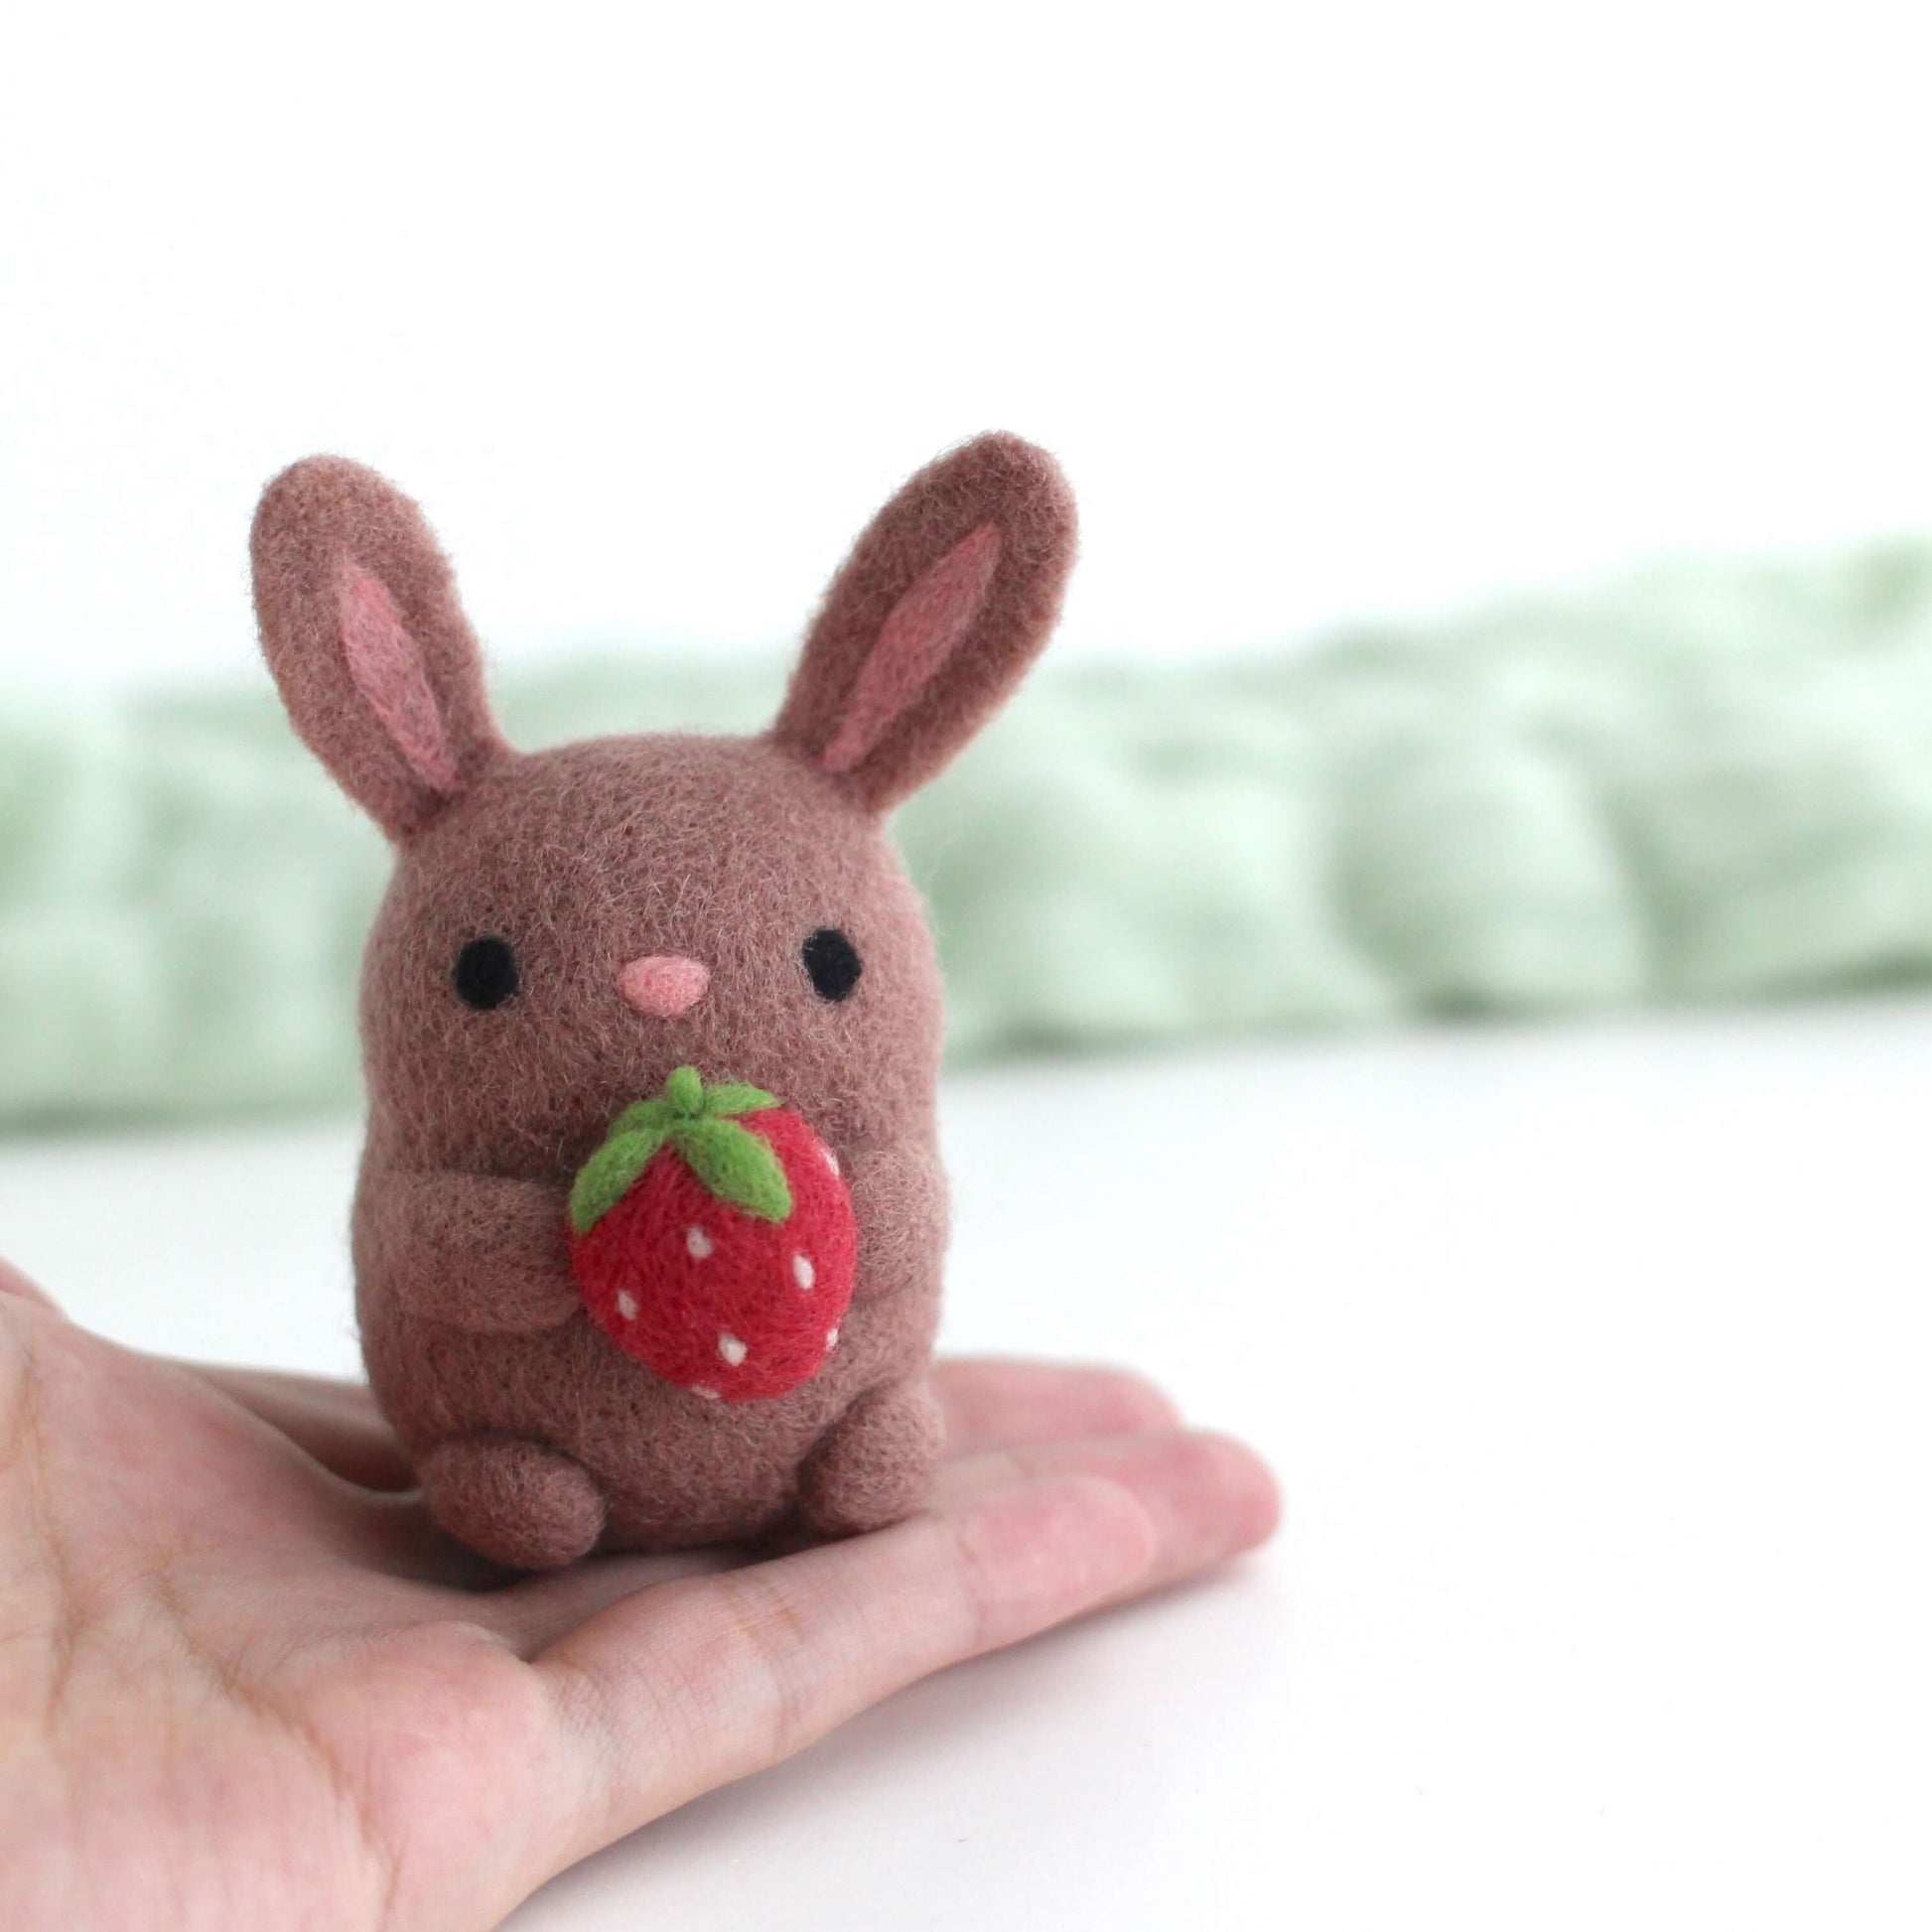 Sad bunny I made with wool felting : r/Needlefelting